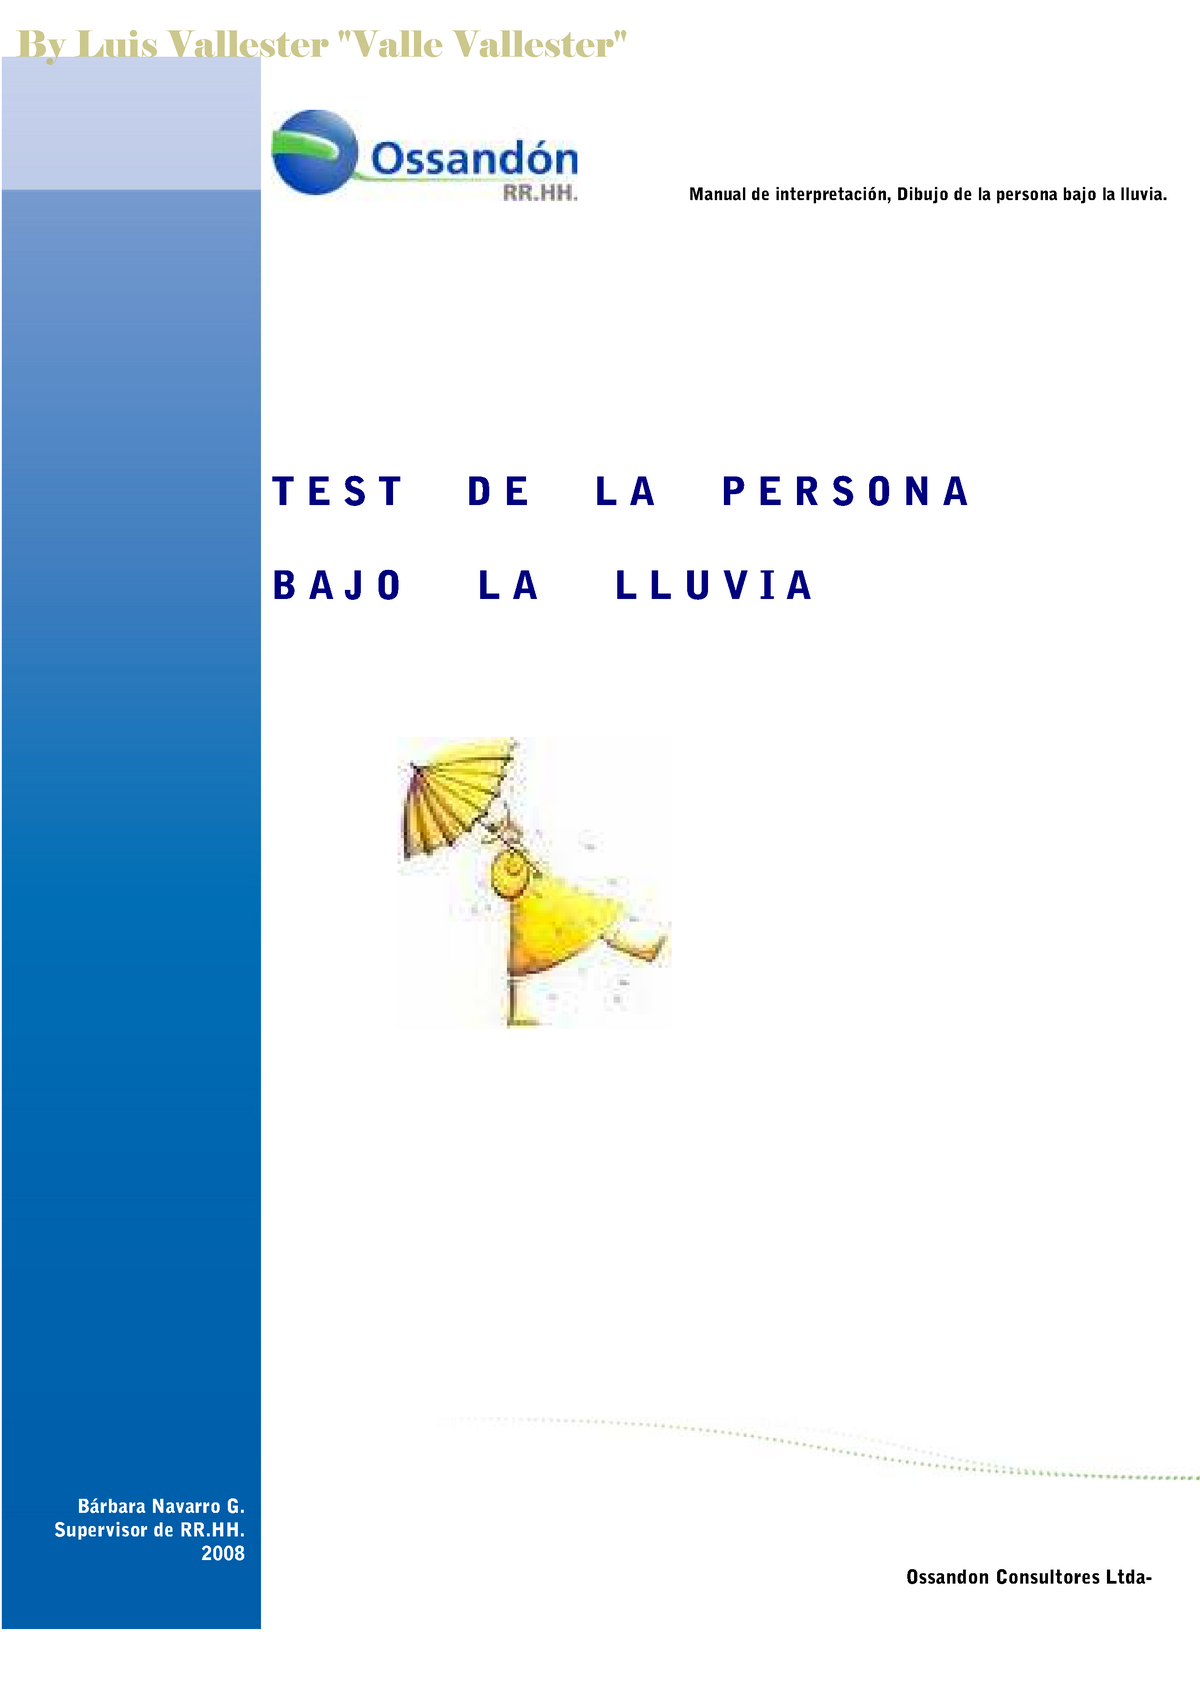 Test del dibujo de la persona bajo la lluvia Pruebas Psicométricas - Manual  de interpretación, - Studocu